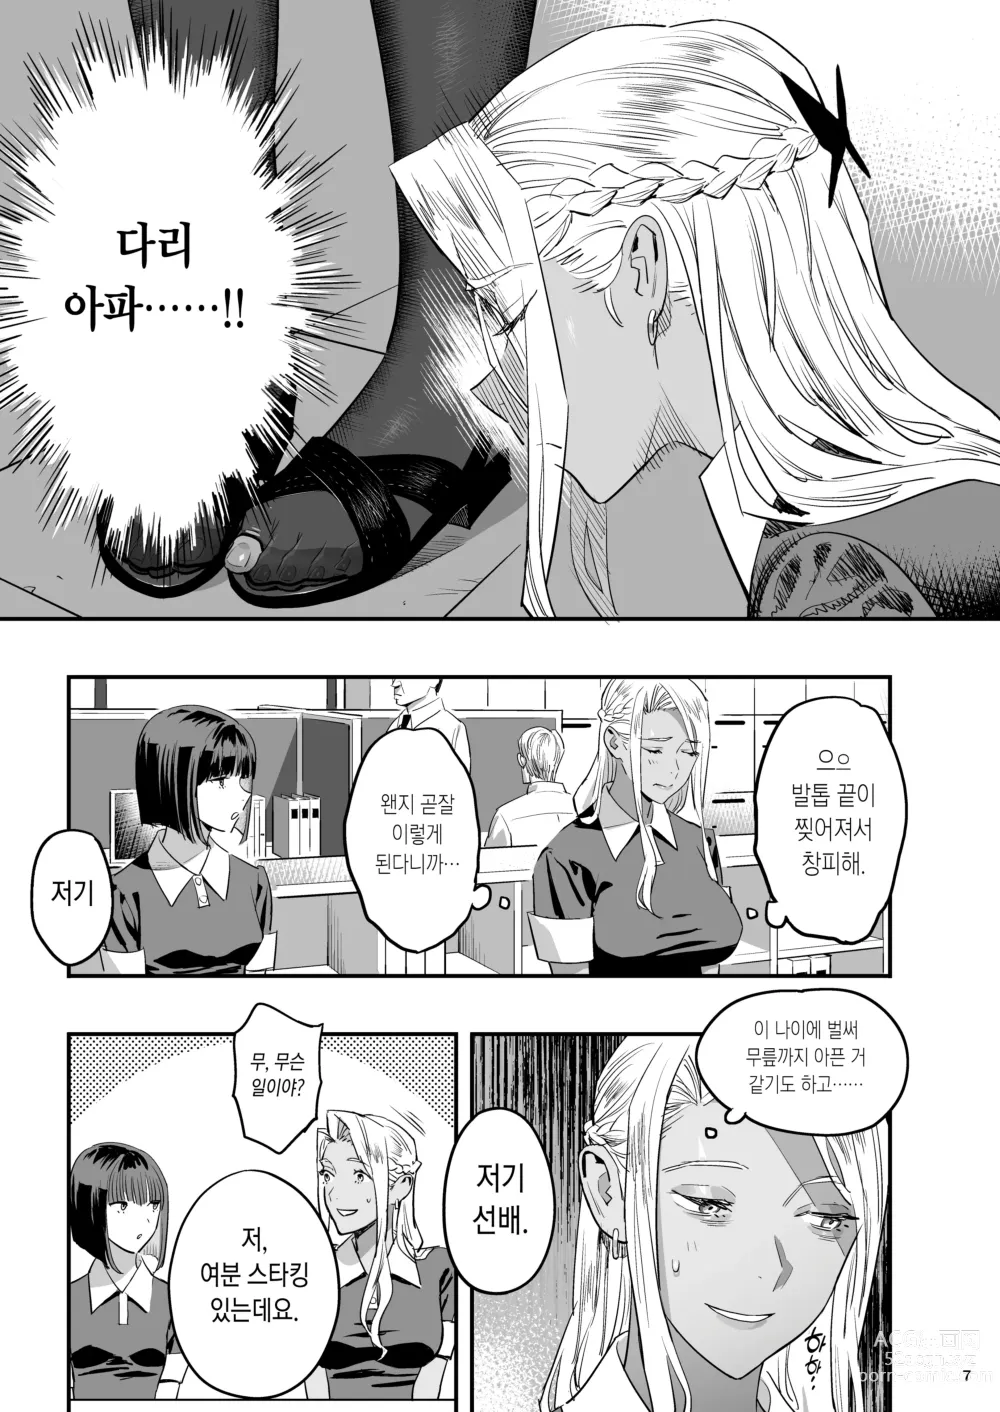 Page 4 of doujinshi 내가 먼저 좋아했는데 정체.